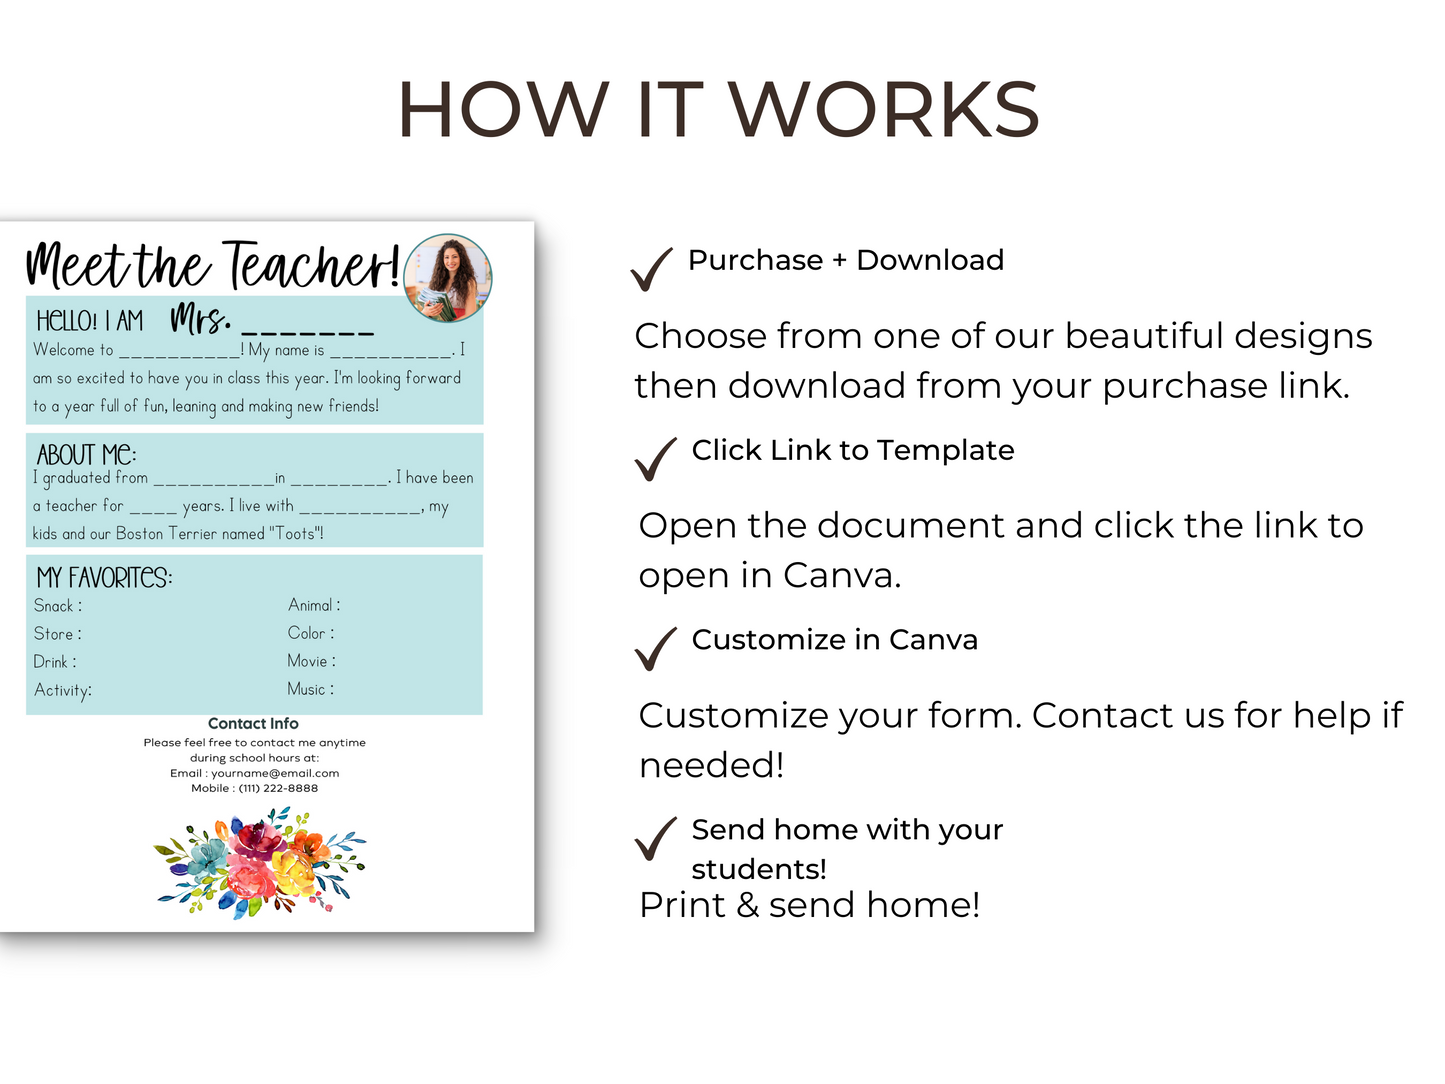 Meet the Teacher Letter Template - Floral